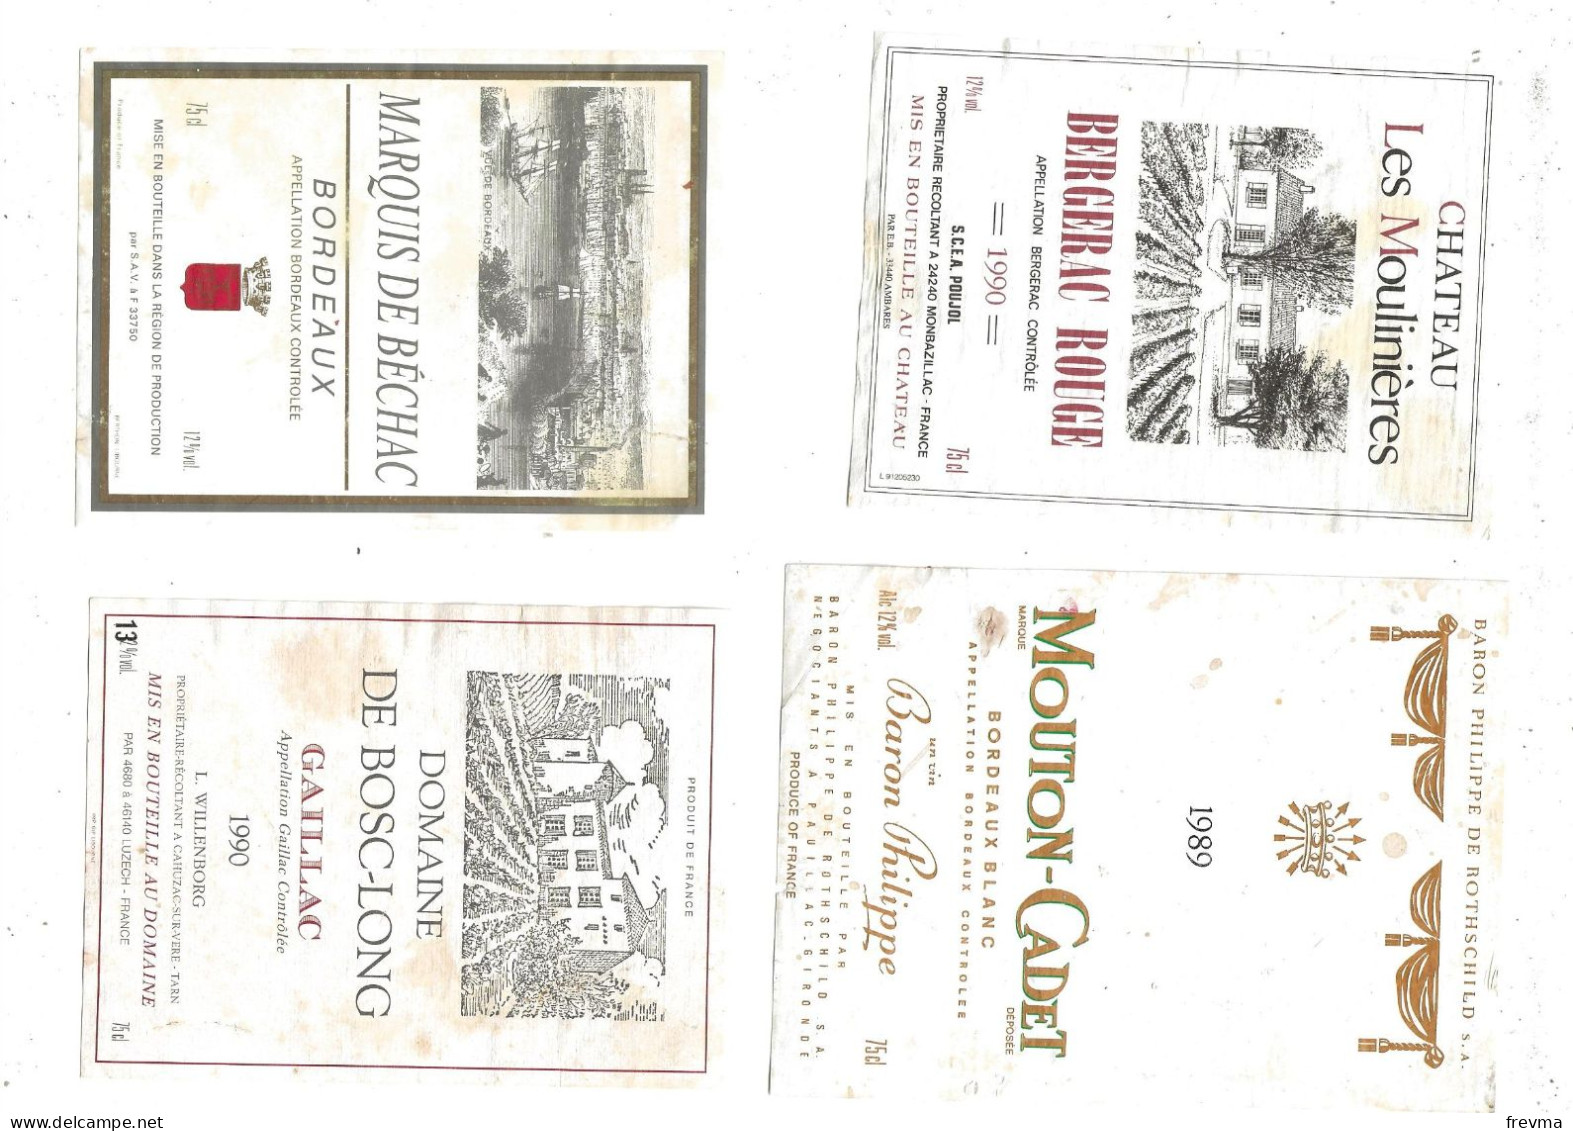 Differentes etiquettes de vins